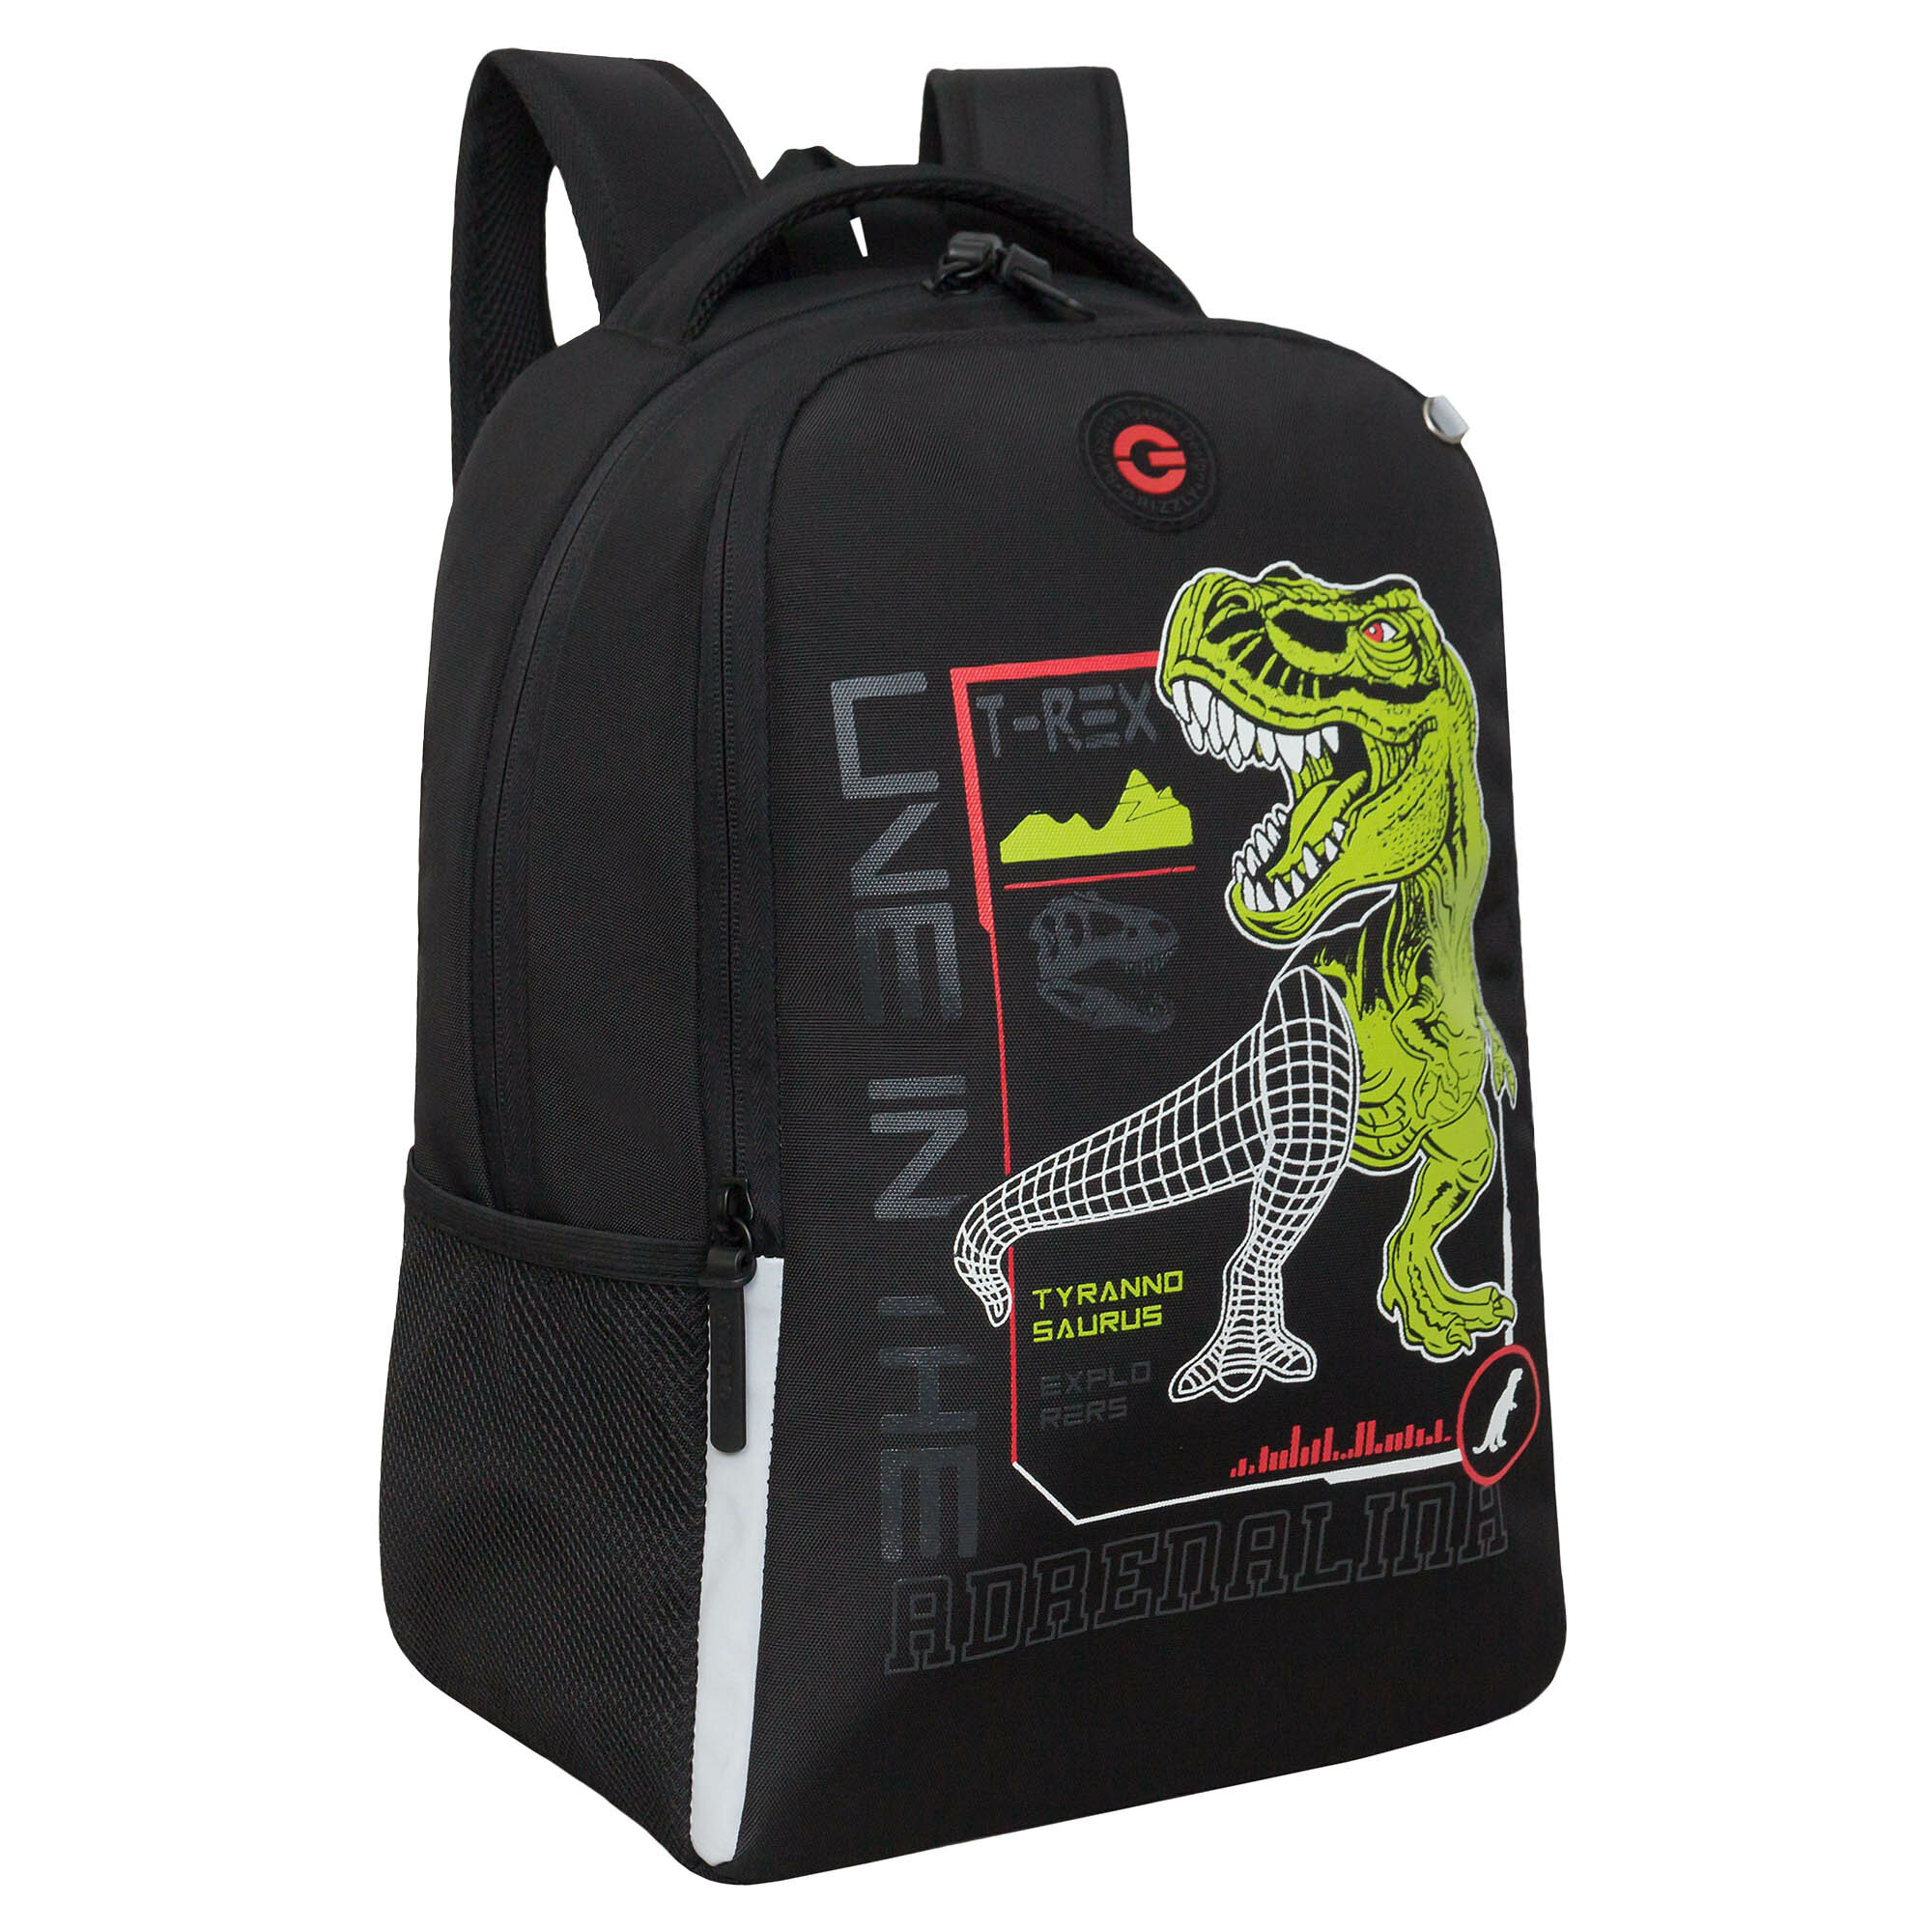 Рюкзак школьный GRIZZLY легкий с жесткой спинкой, двумя отделениями, для мальчика RB-451-9/1